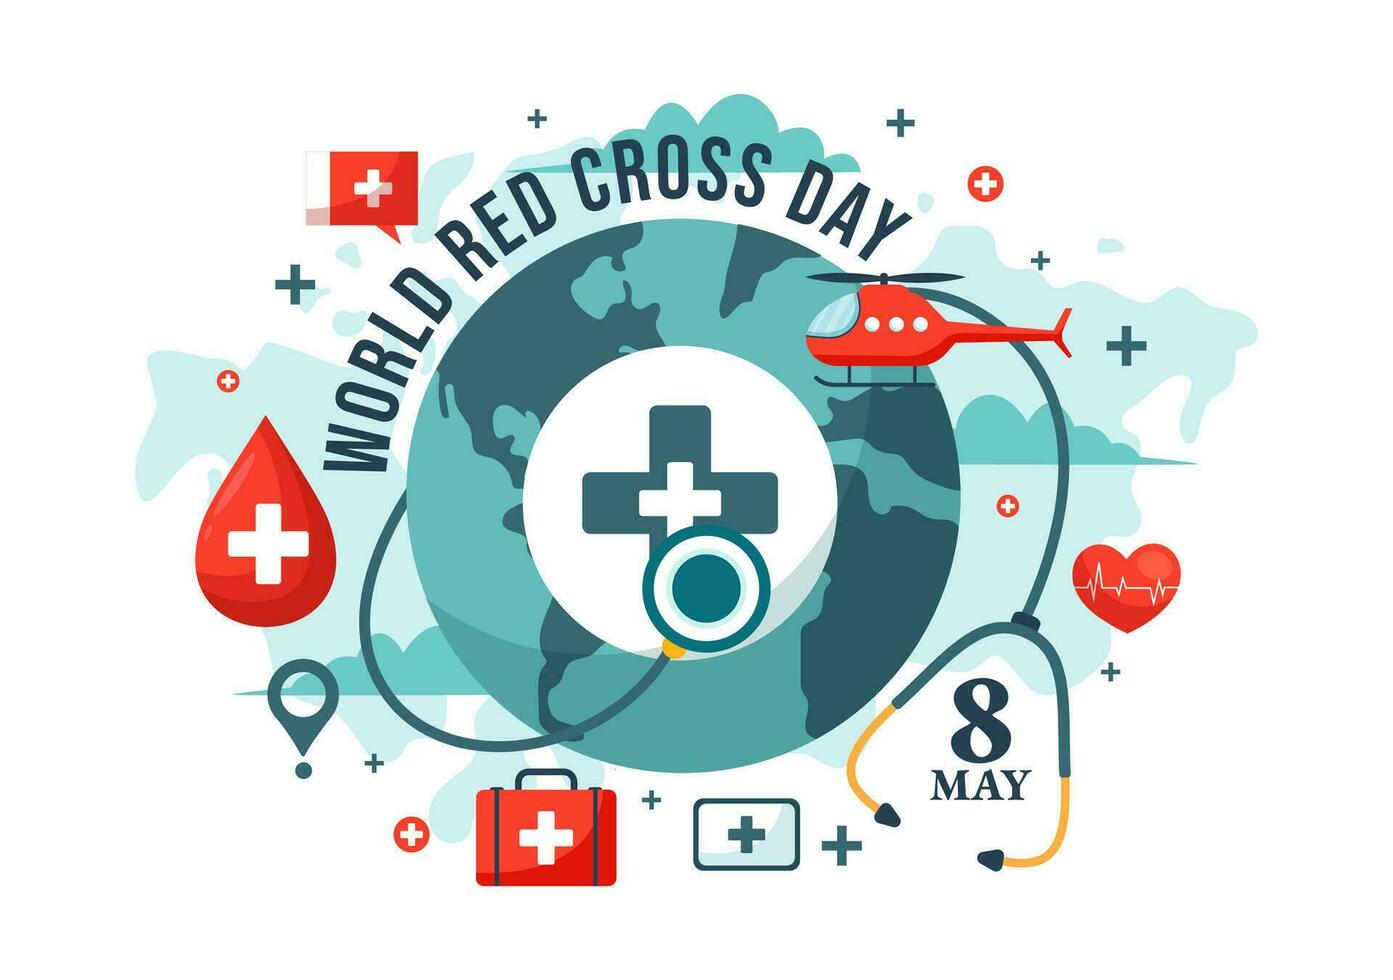 värld röd korsa dag vektor illustration på Maj 8 till medicinsk hälsa och tillhandahålla blod i sjukvård platt tecknad serie bakgrund design